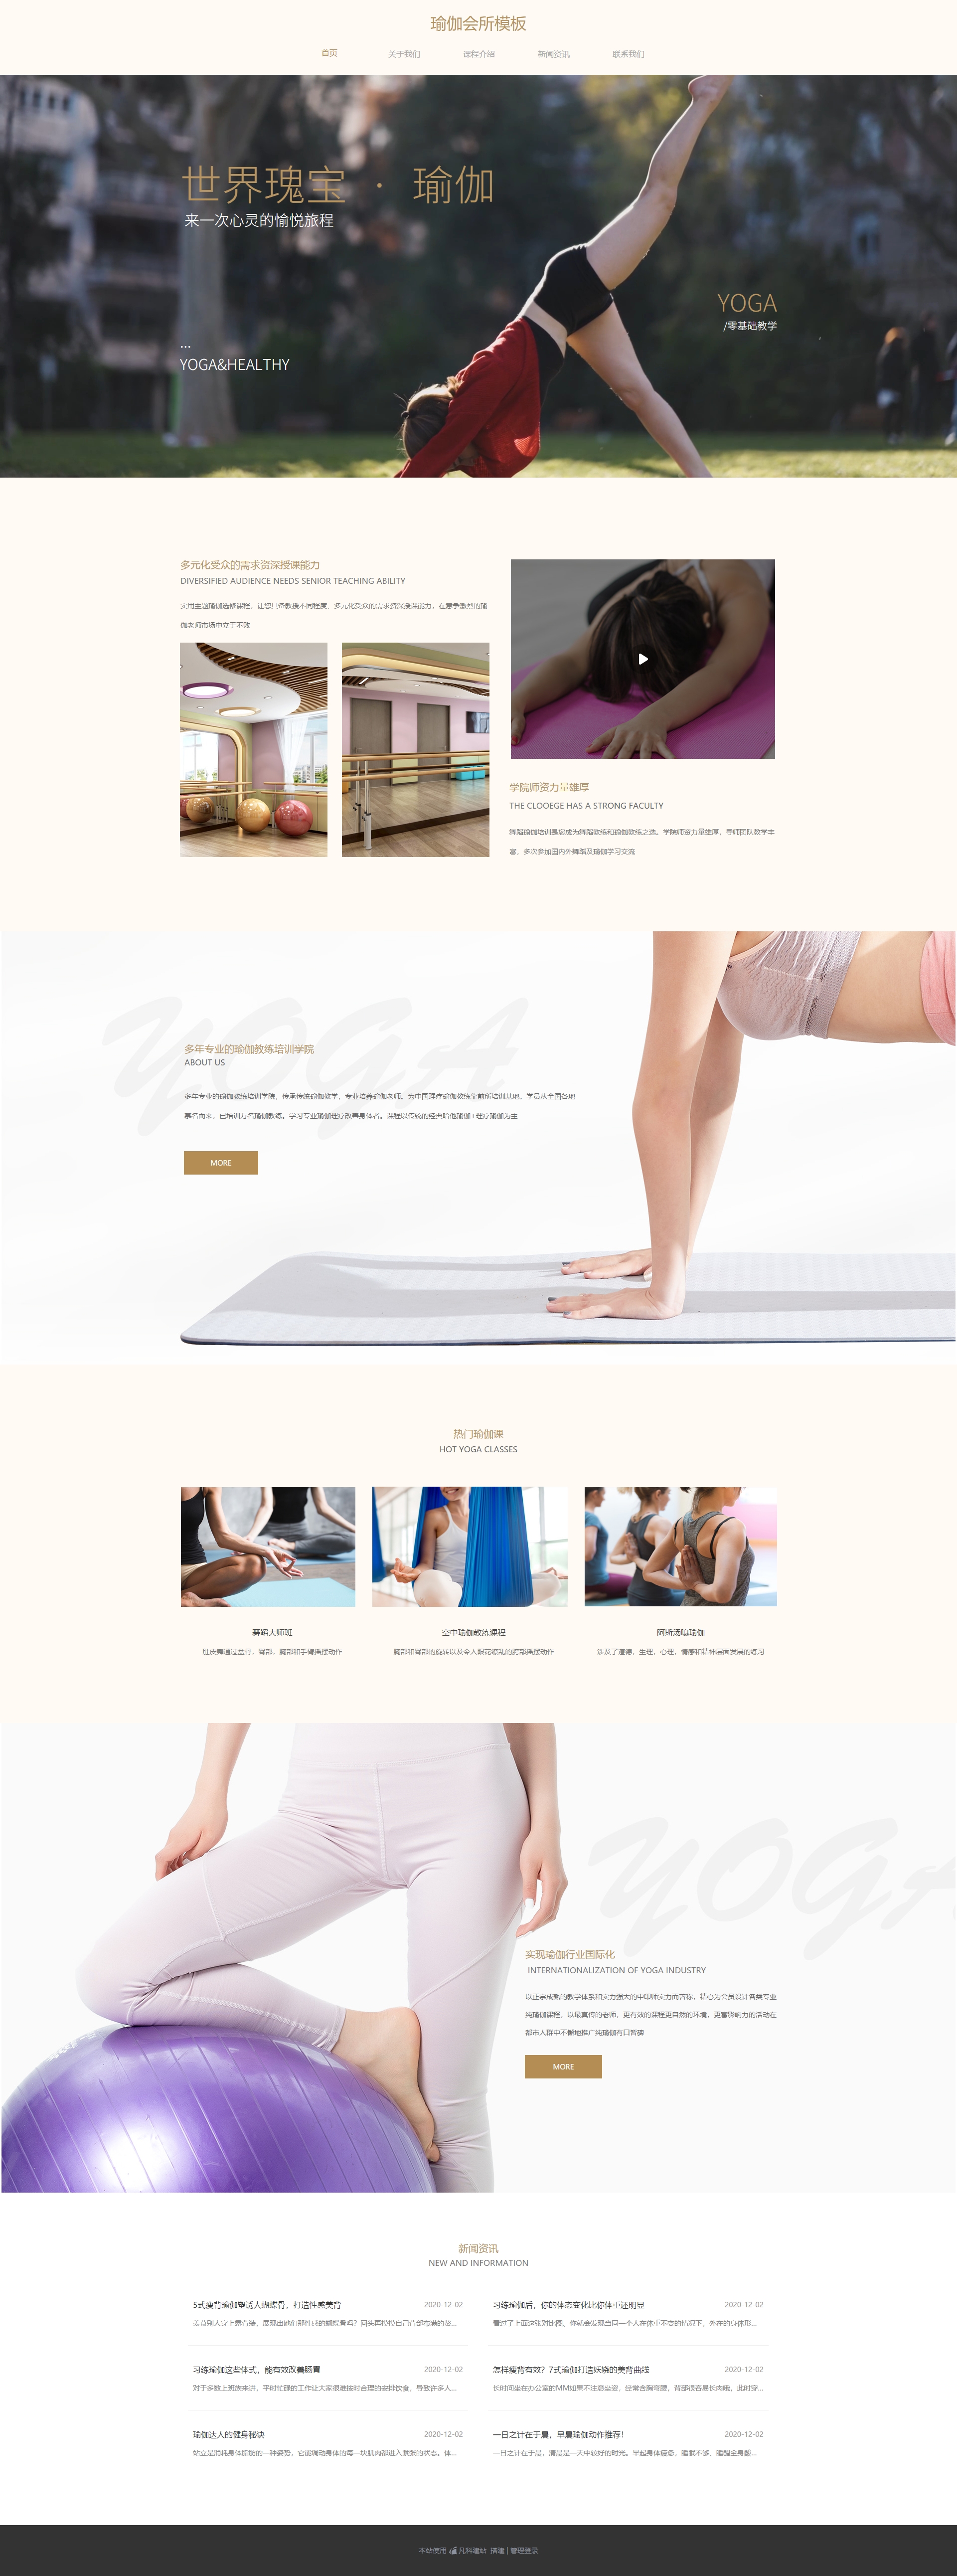 瑜伽 健身俱乐部网页模板